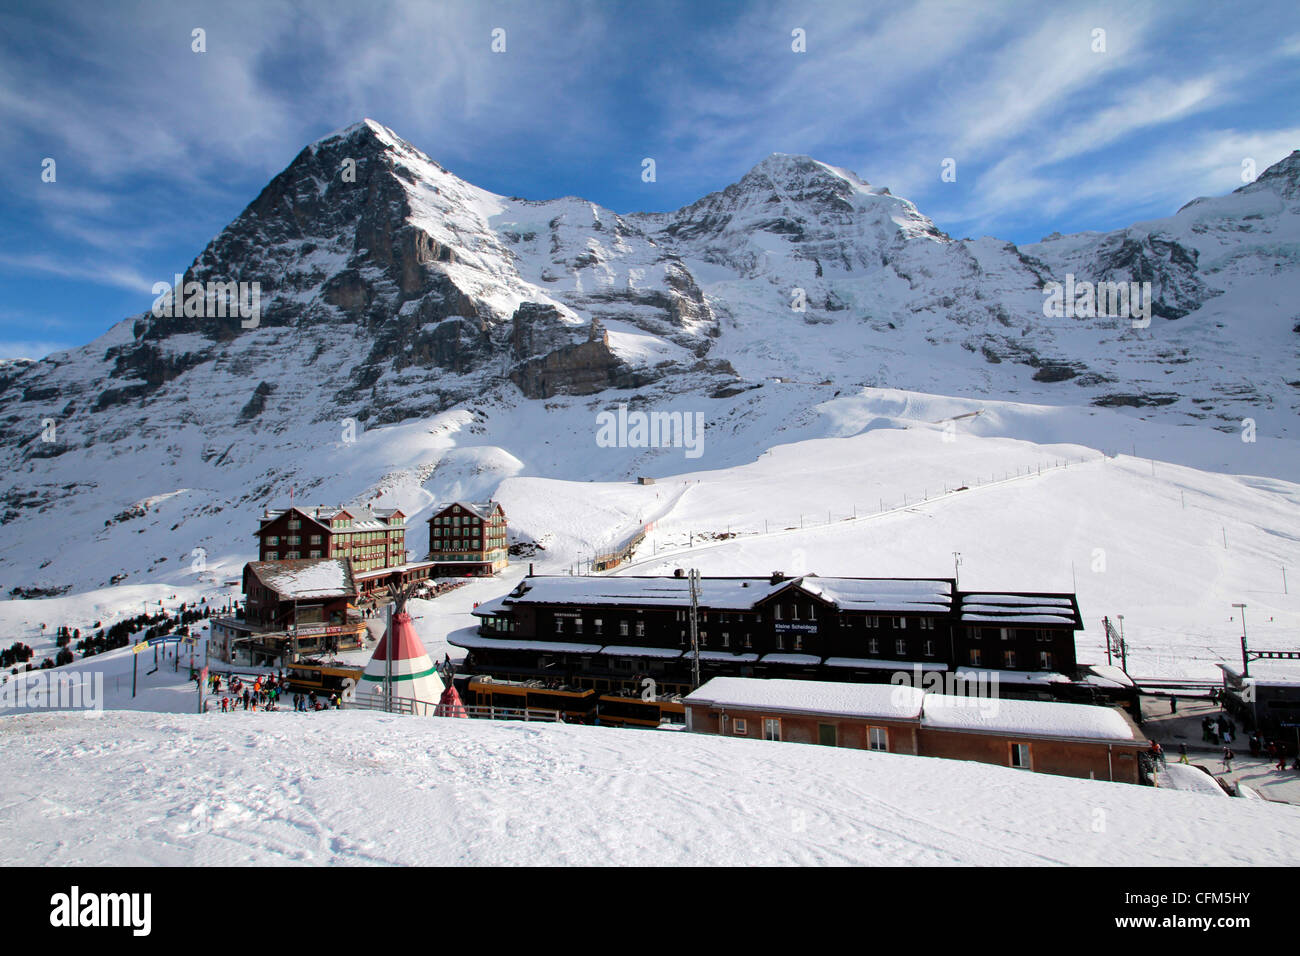 Kleine Scheidegg, Eiger and Monch, Bernese Oberland, Switzerland, Europe Stock Photo